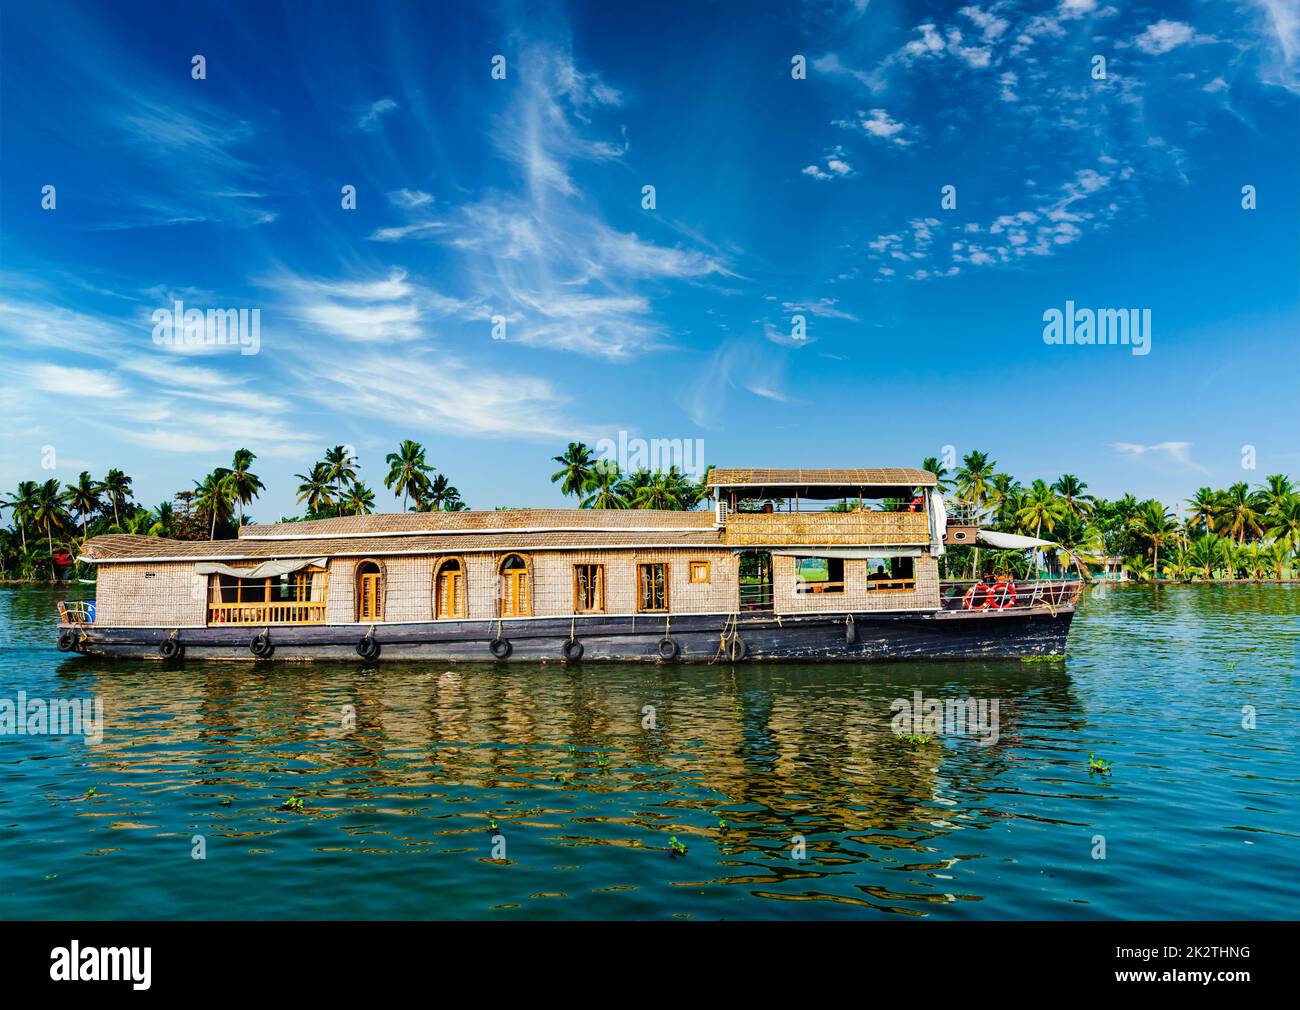 Houseboat on Kerala backwaters, India Stock Photo